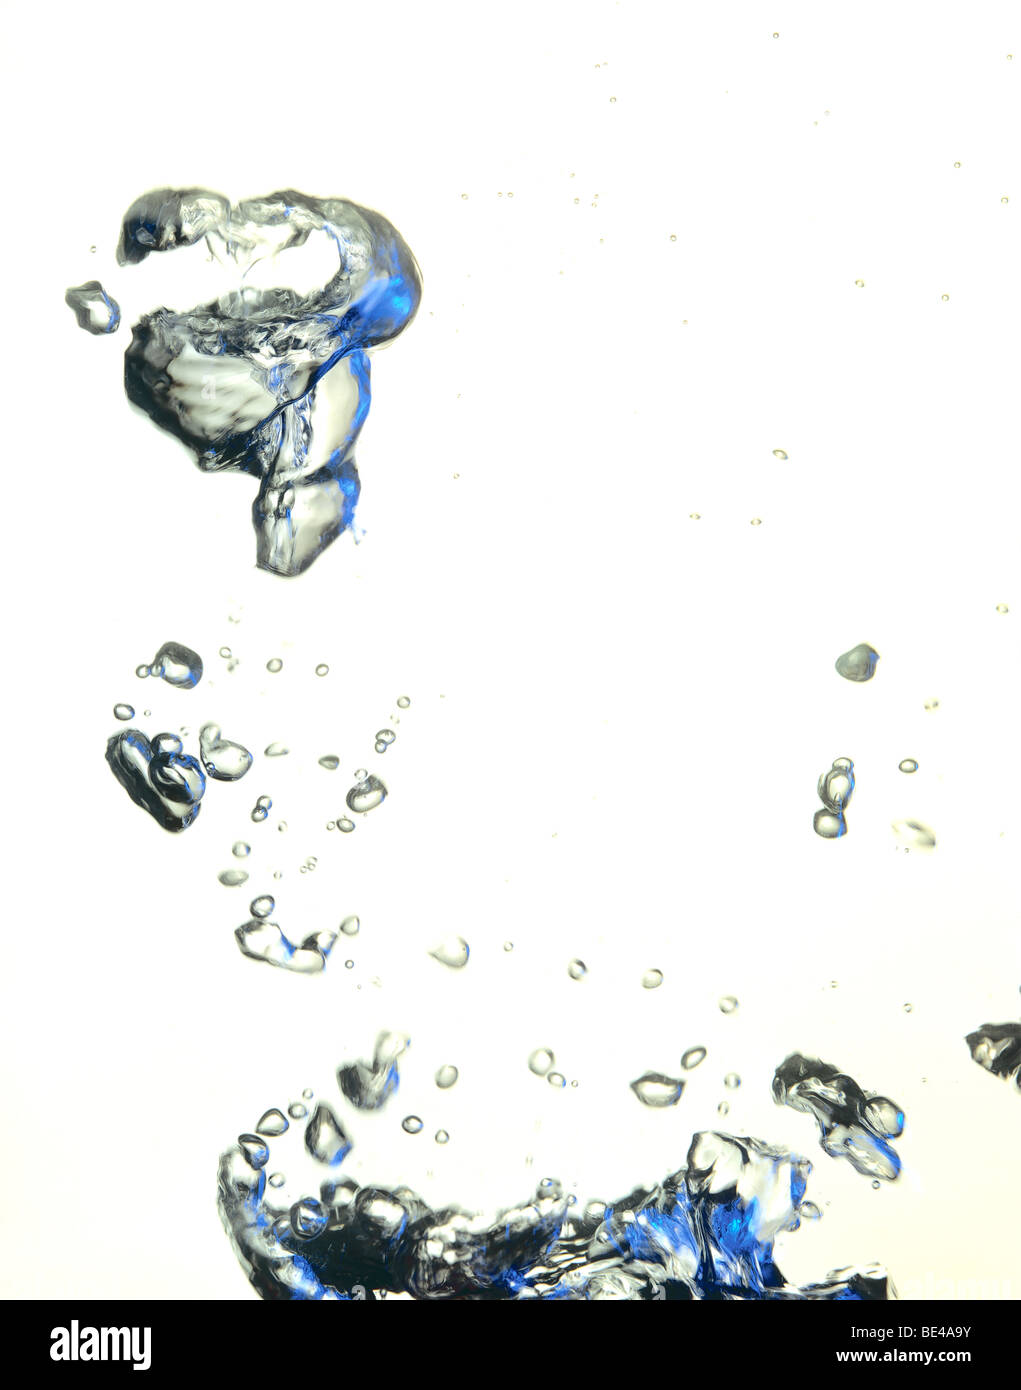 Immagine della chiusura del bolle di aria in acqua Foto Stock